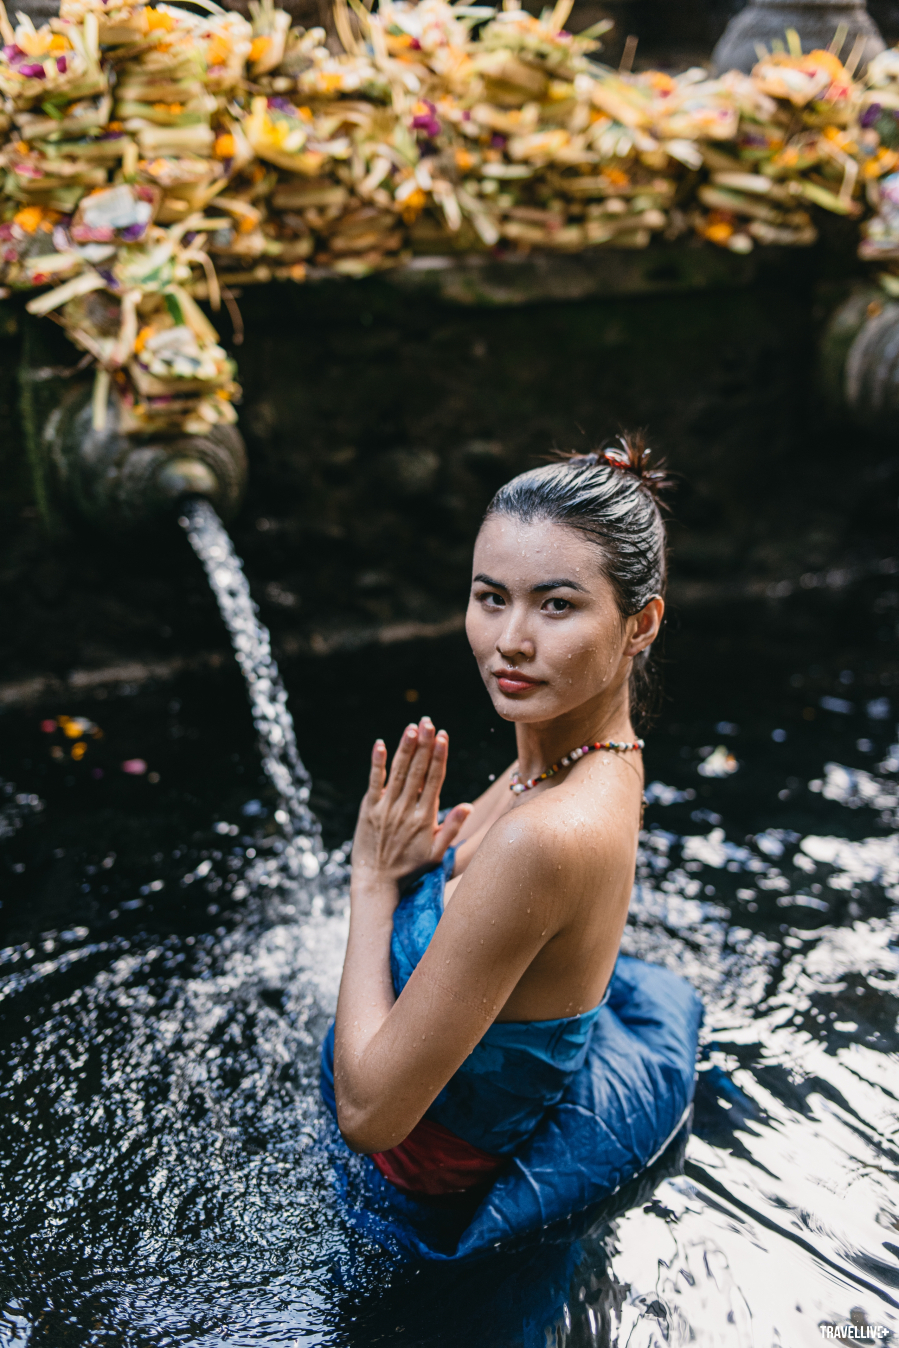 Người mẫu Cao Thiên Trang tham gia Amazing Tour 5 với chủ đề “Bali - Từ núi lửa xuống biển sâu” được Travellive & ĐSQ Bali phối hợp tổ chức từ tháng 10/2019